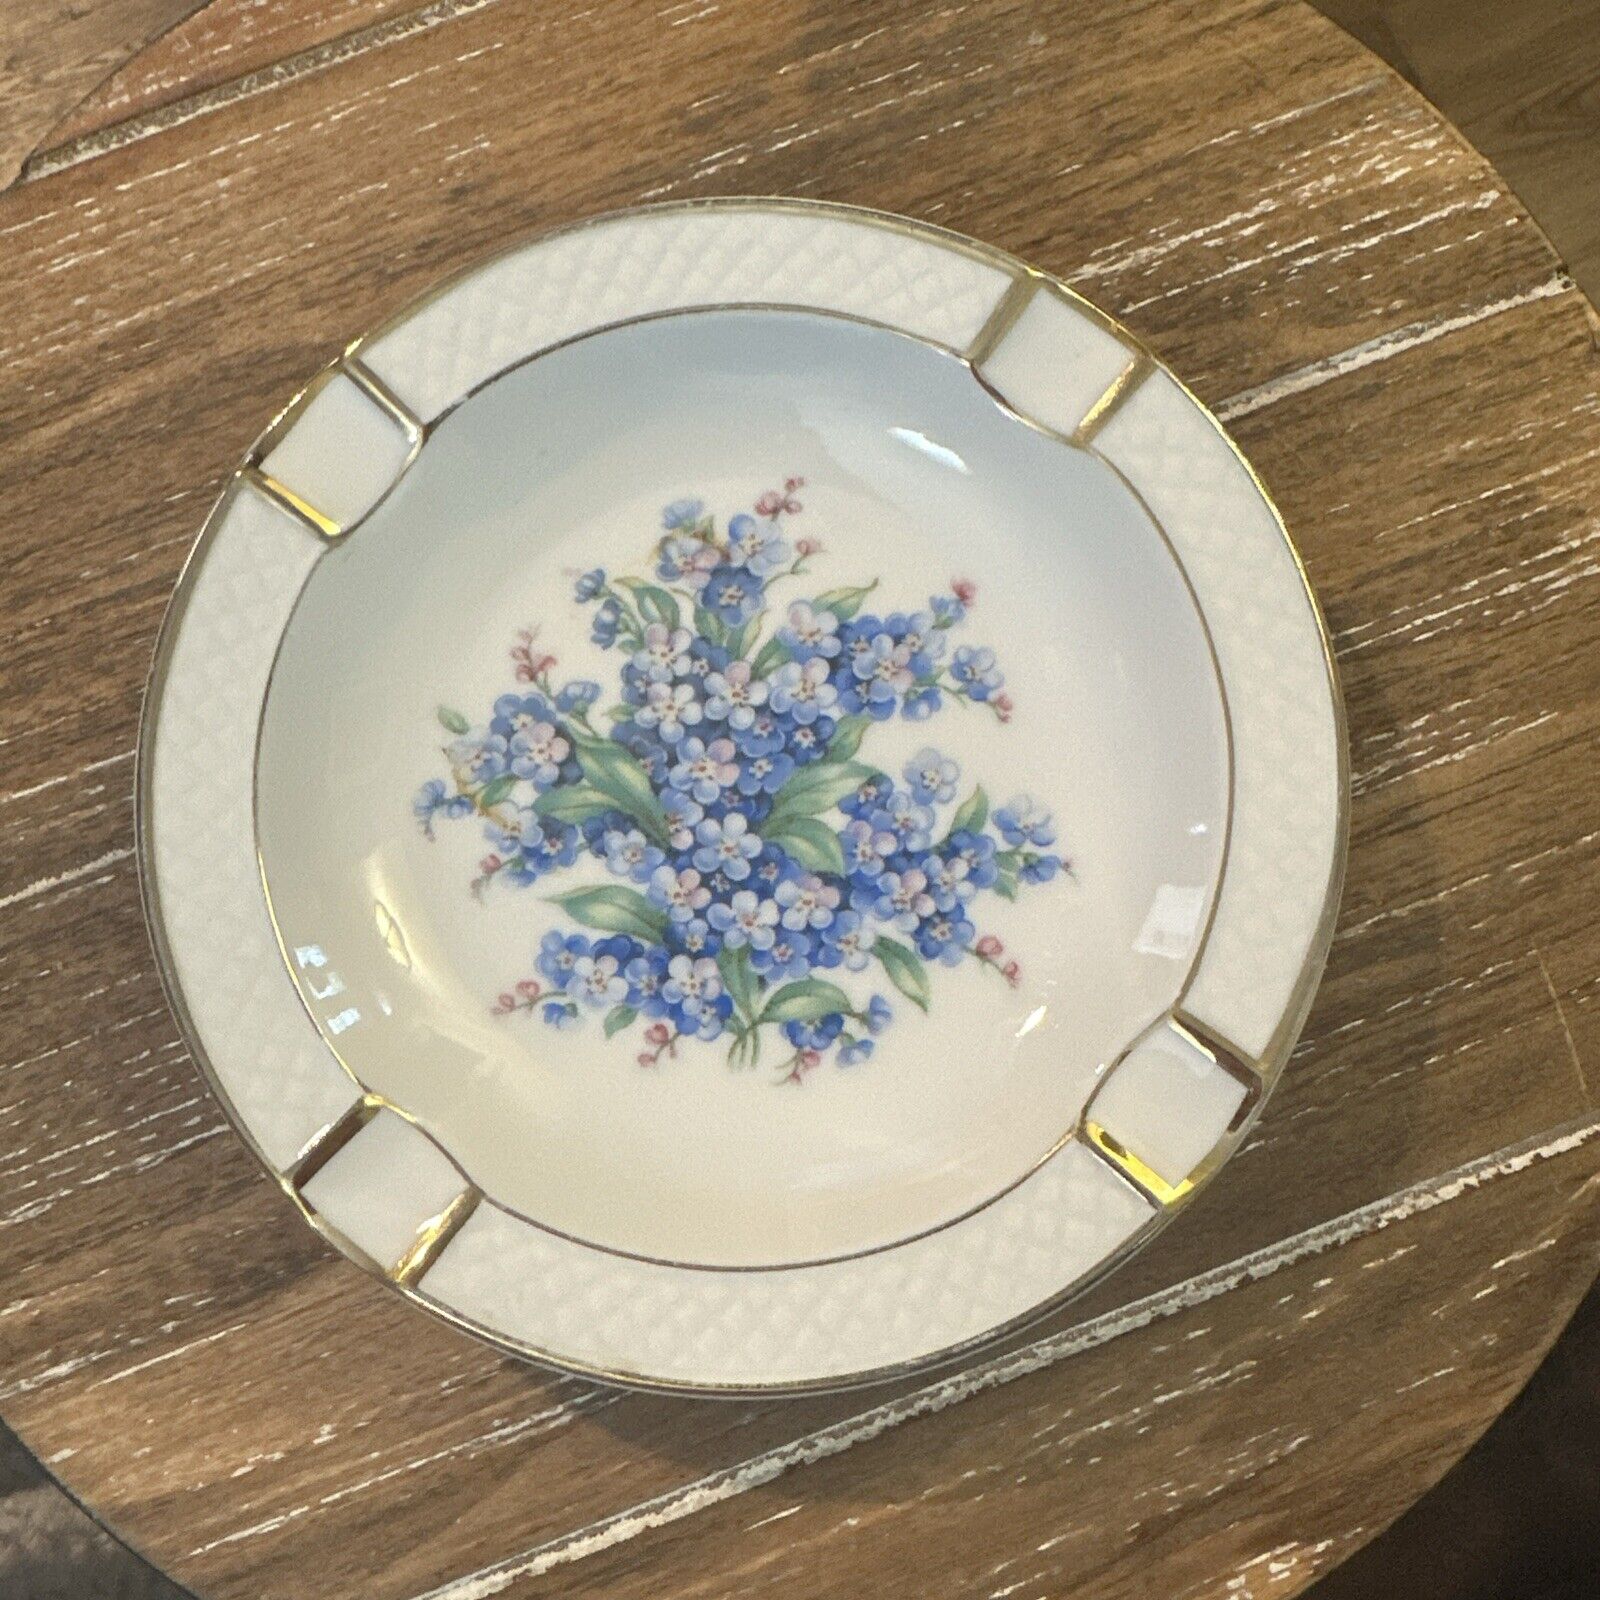 Vintage Ashtray Plate Schumann Arzberg Germany Blue Floral Gold Trim Violets